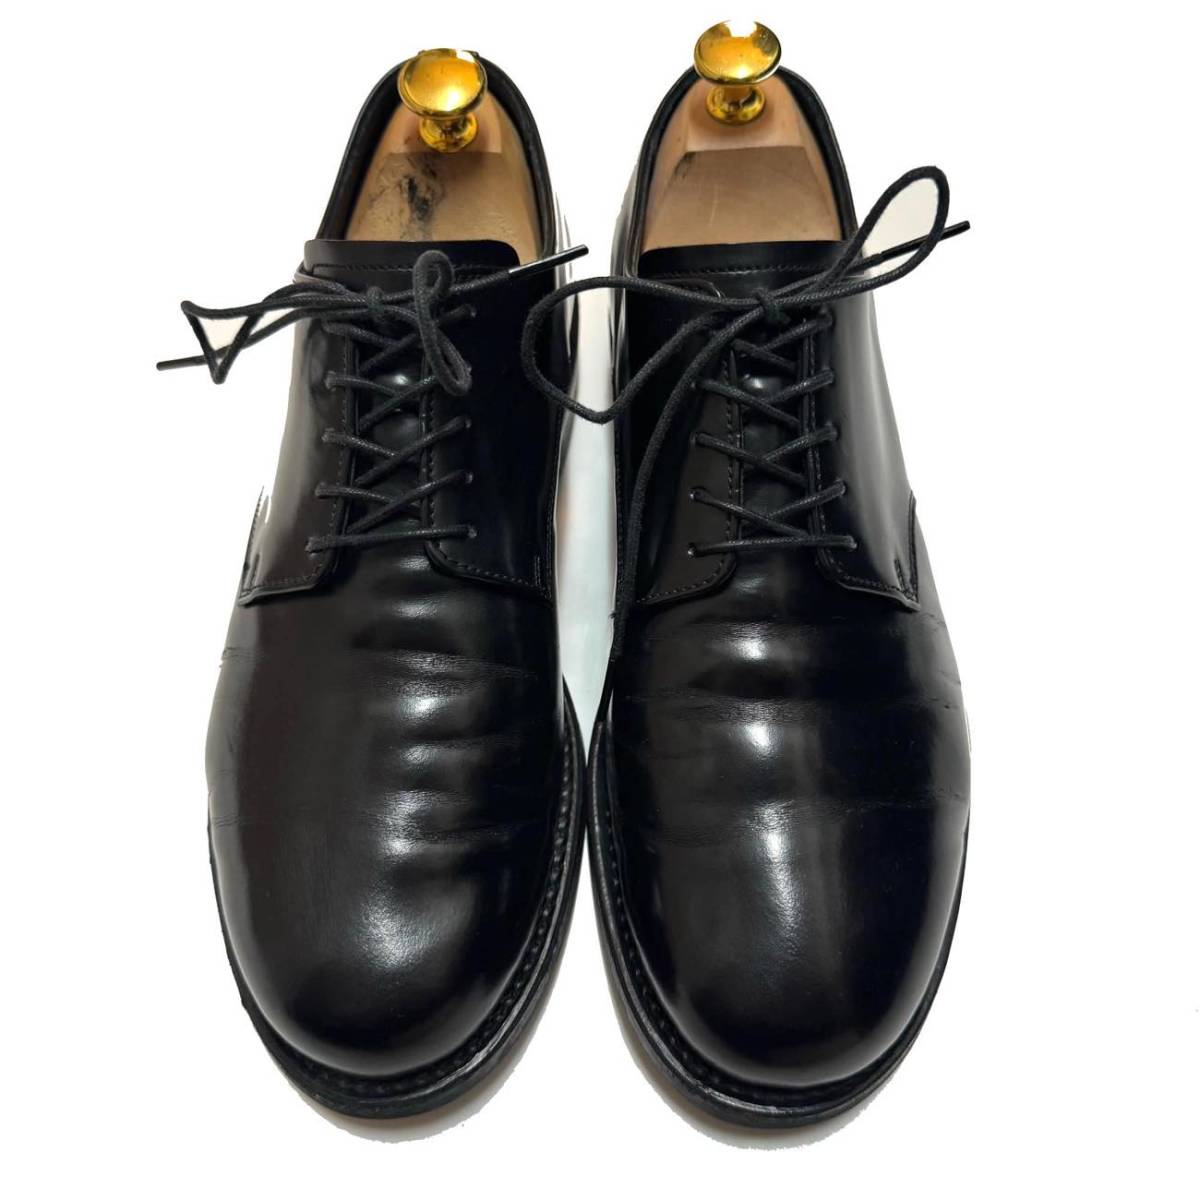 ATTACHMENT Attachment h.arai collaboration plain tu leather shoes regular price 60,500 jpy 7(25cm degree ) men's short shoes kazyuki bear gai... history 